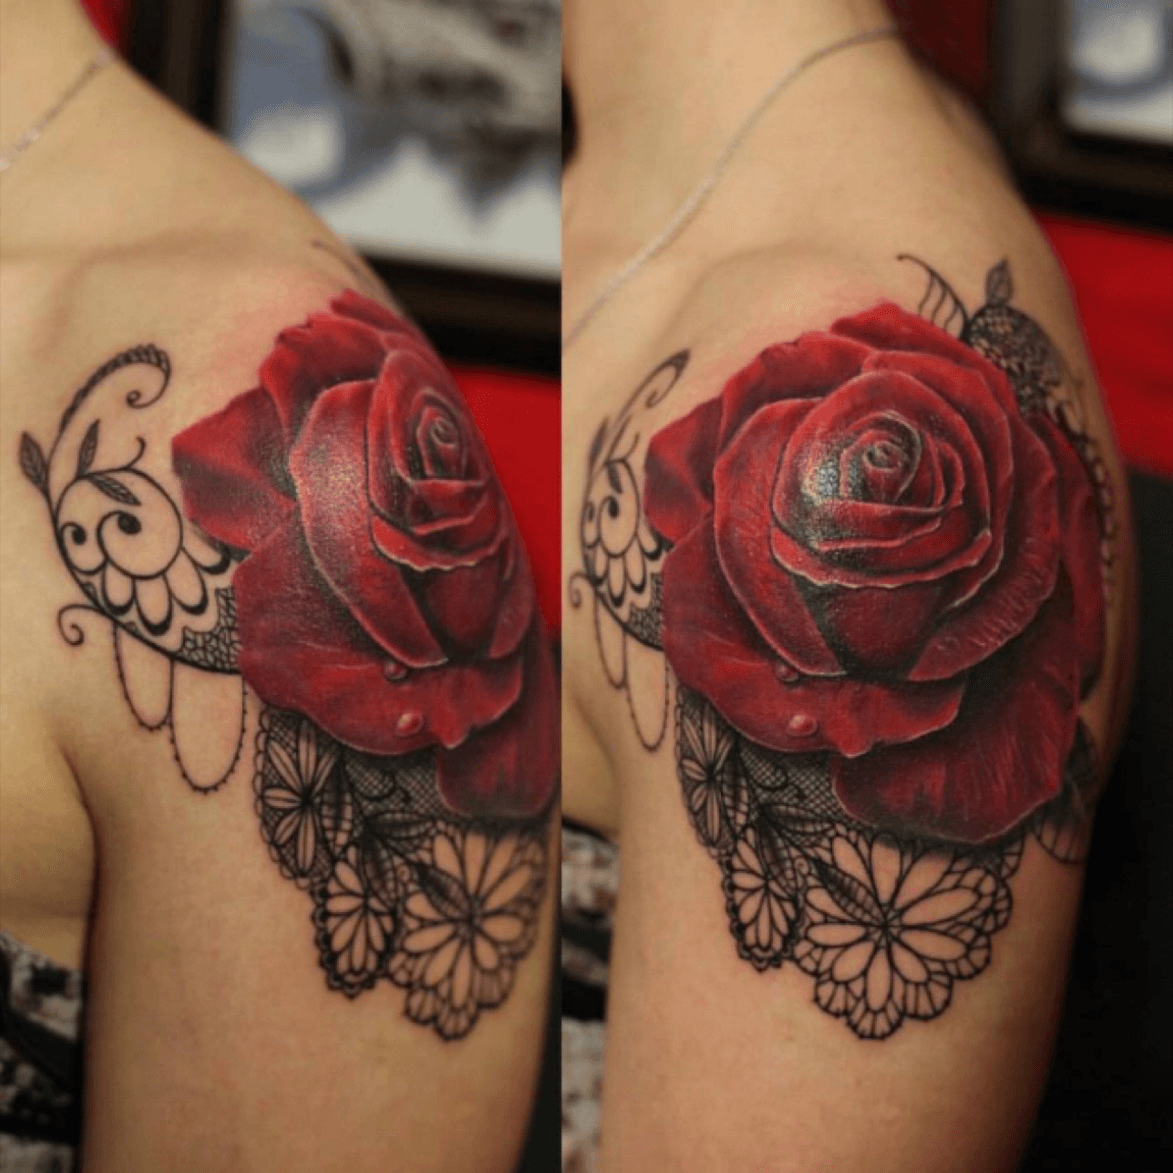 Lace tattoo artist kdumka rose roses tattoo tattoos lace drawing  Lace  tattoo Rose tattoos Lace tattoo design